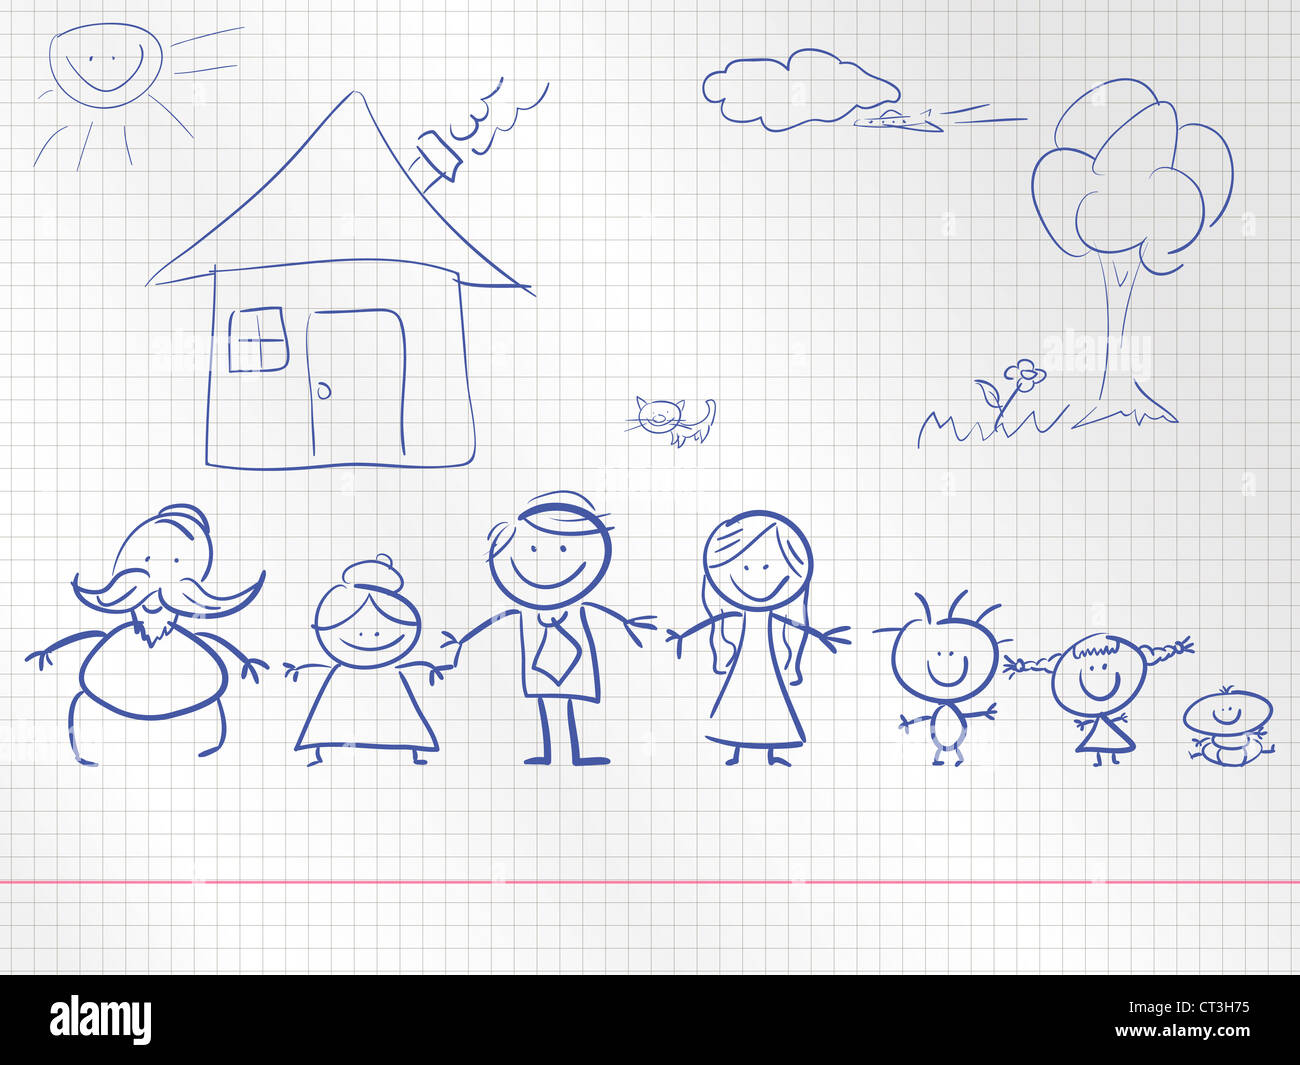 Une famille heureuse, un dessin d'enfant. illustration. Banque D'Images